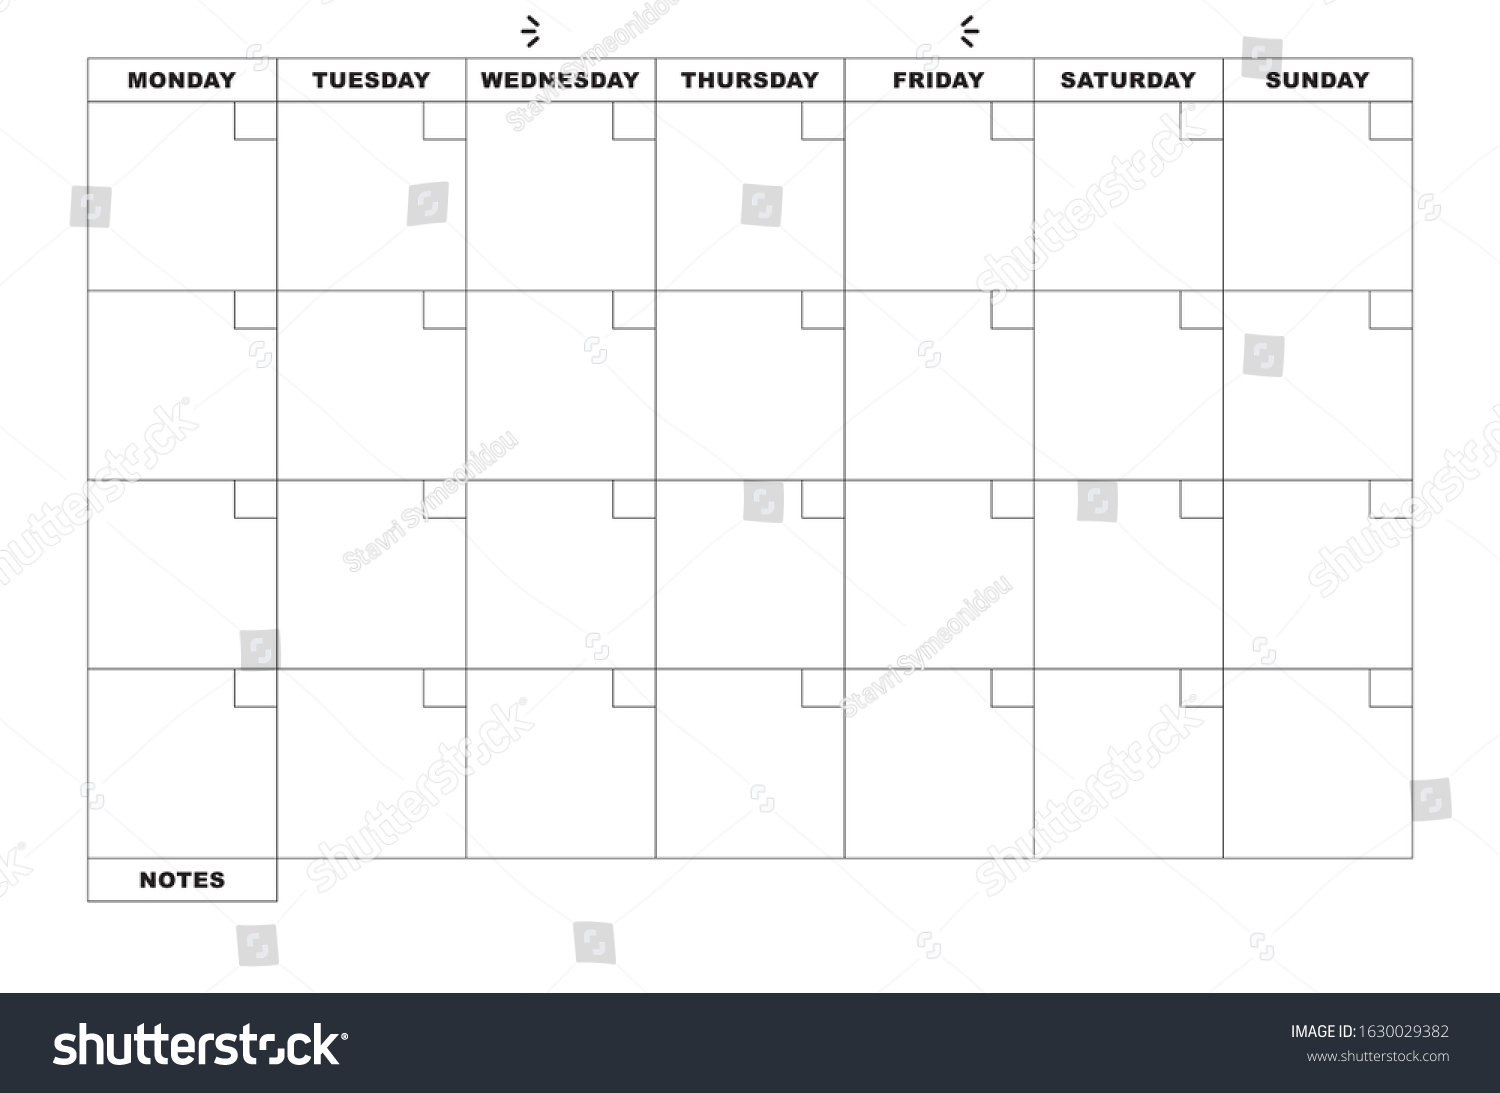 115-694-blank-calendar-template-shutterstock